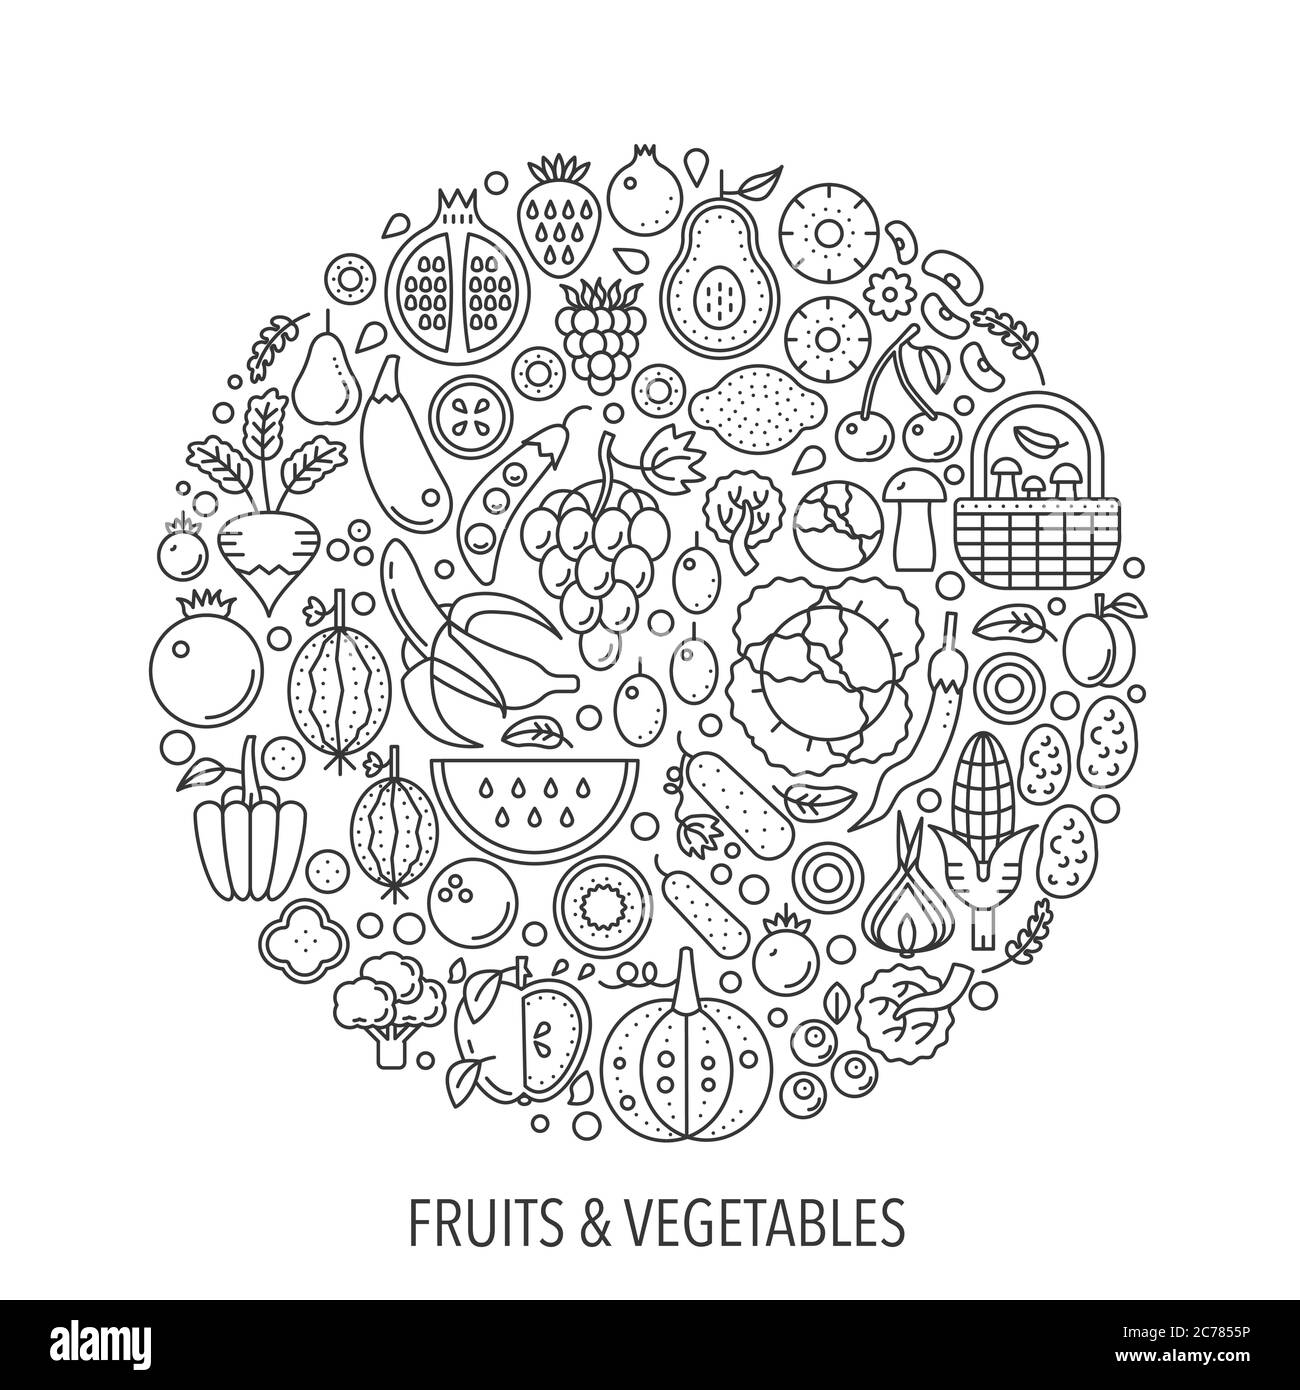 Frutta verdura in cerchio - illustrazione della linea di concetto per copertina, emblema, badge. Frutta verdura sottile linea Stroke icone. Illustrazione Vettoriale